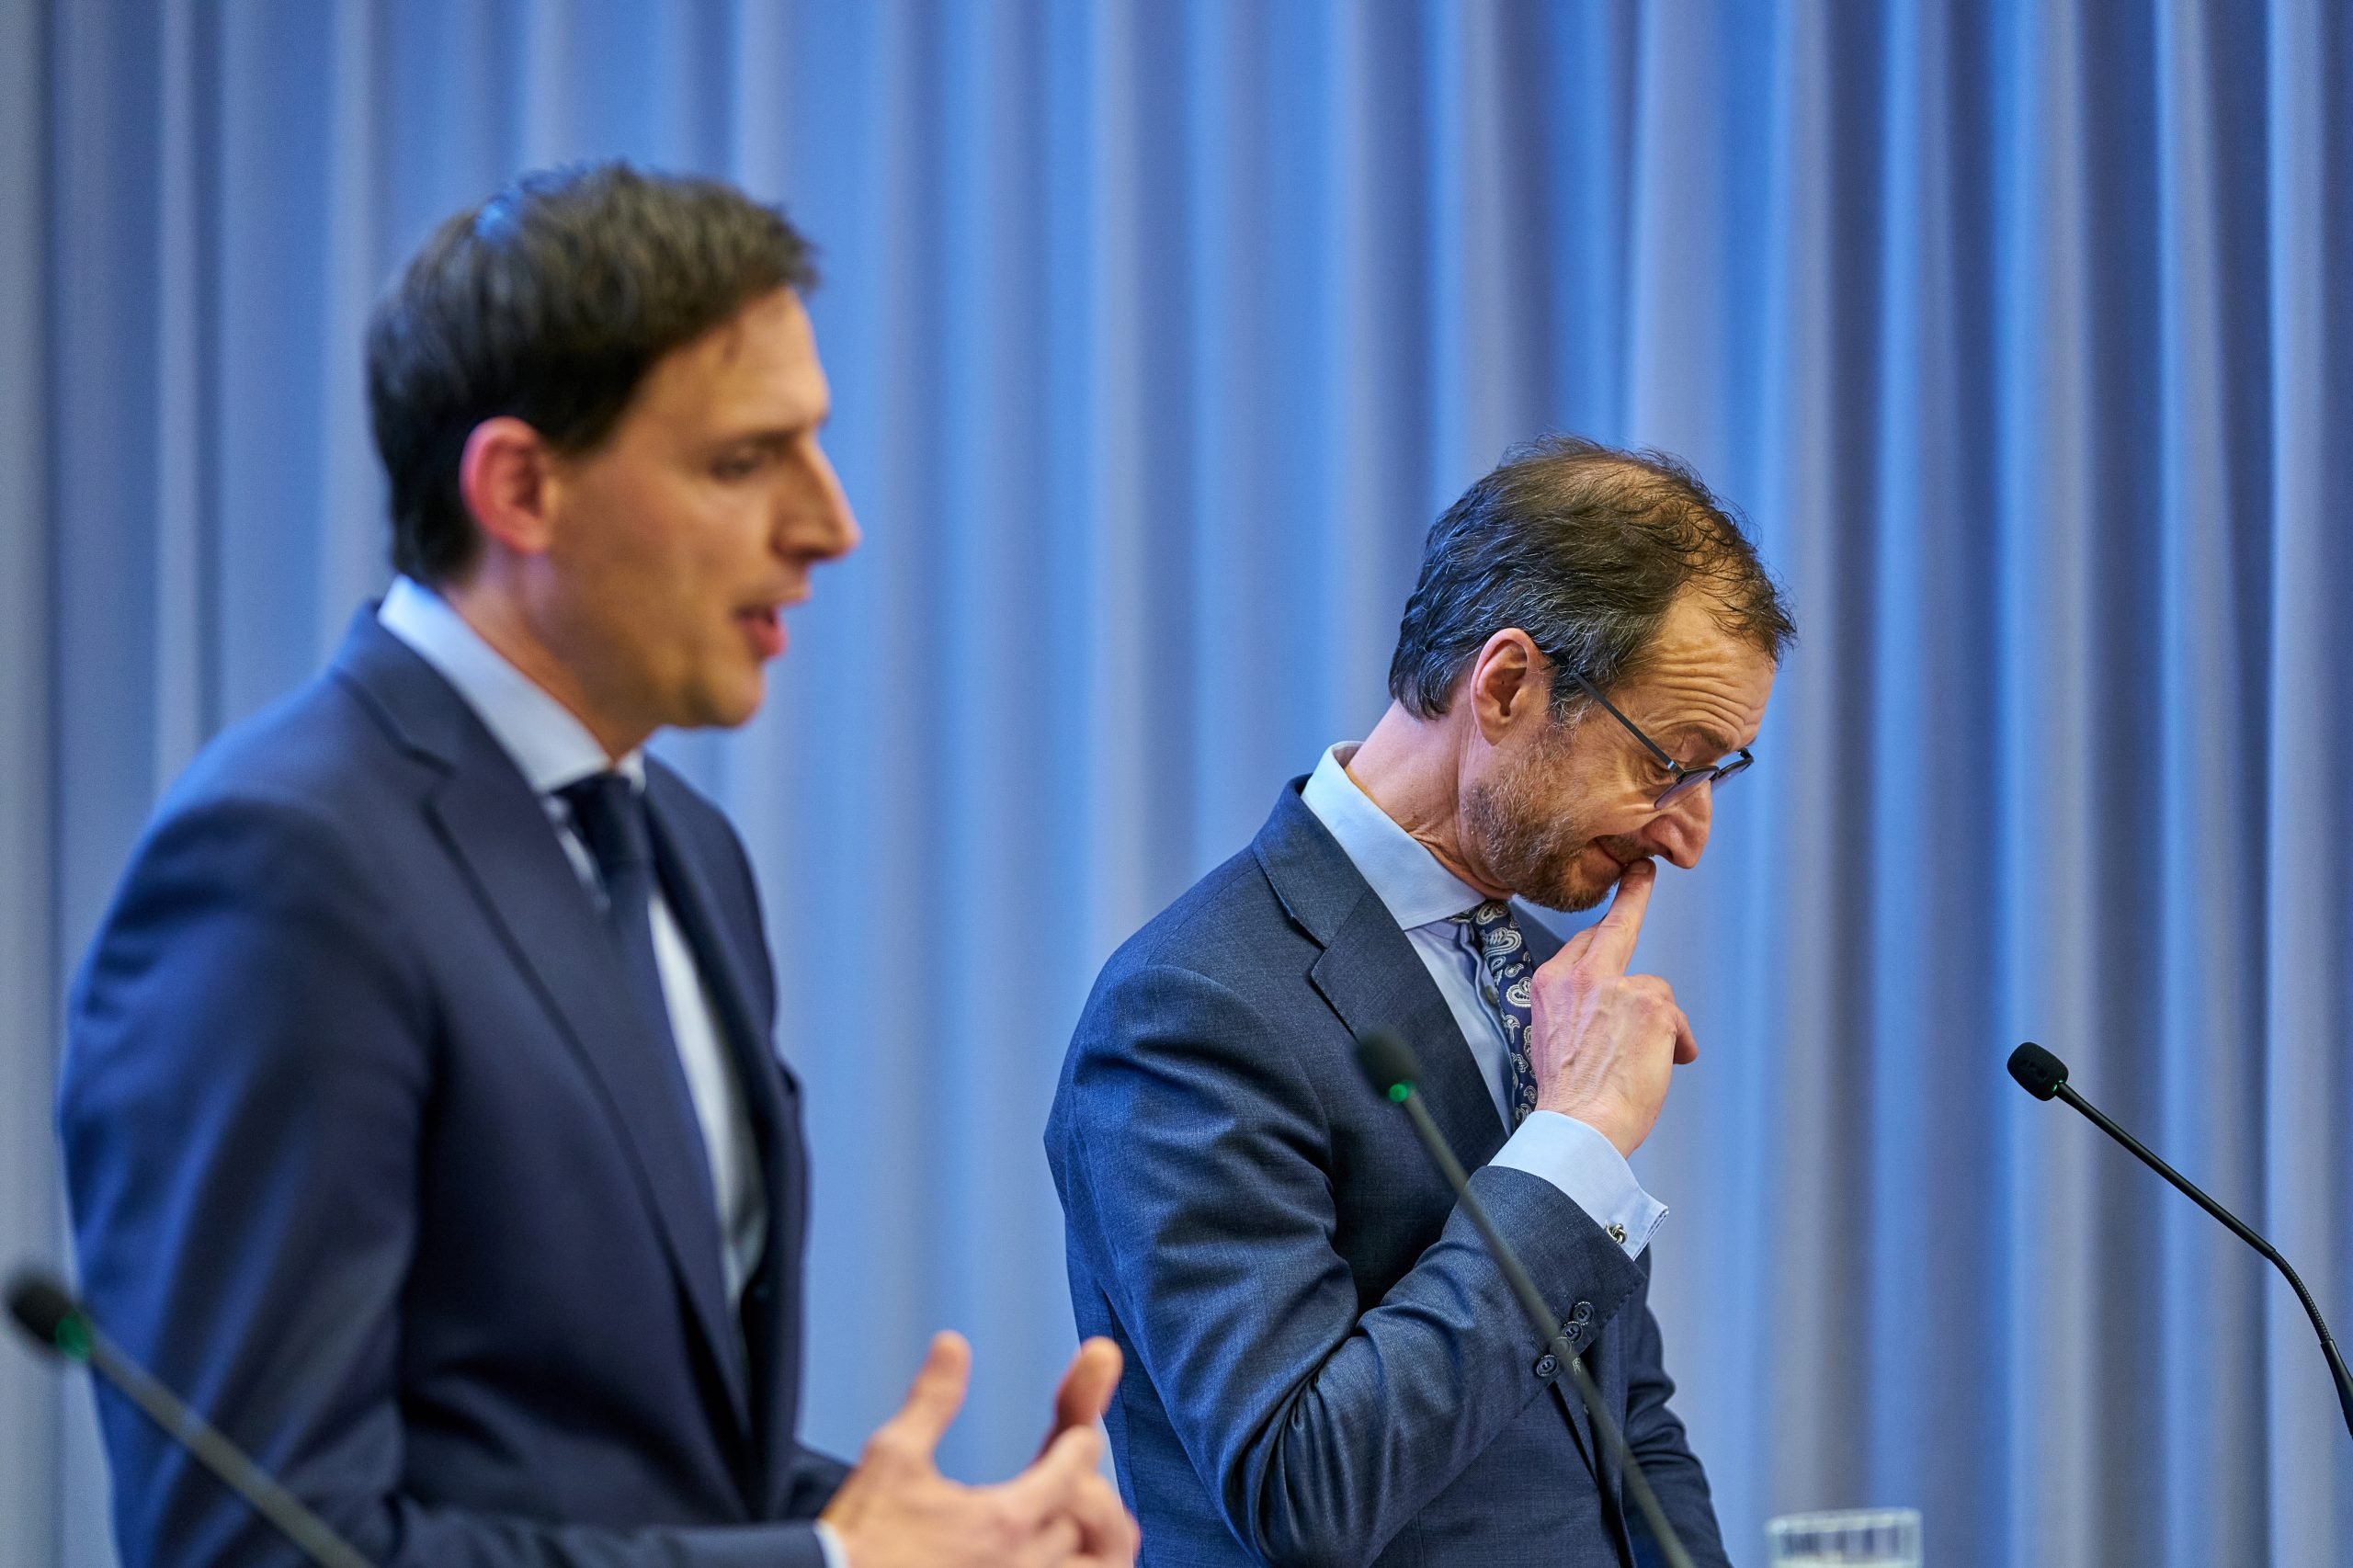 De ministers Wopke Hoekstra (Financiën) en Eric Wiebes (Economische Zaken) tijdens een persconferentie over de steunmaatregelen in maart.